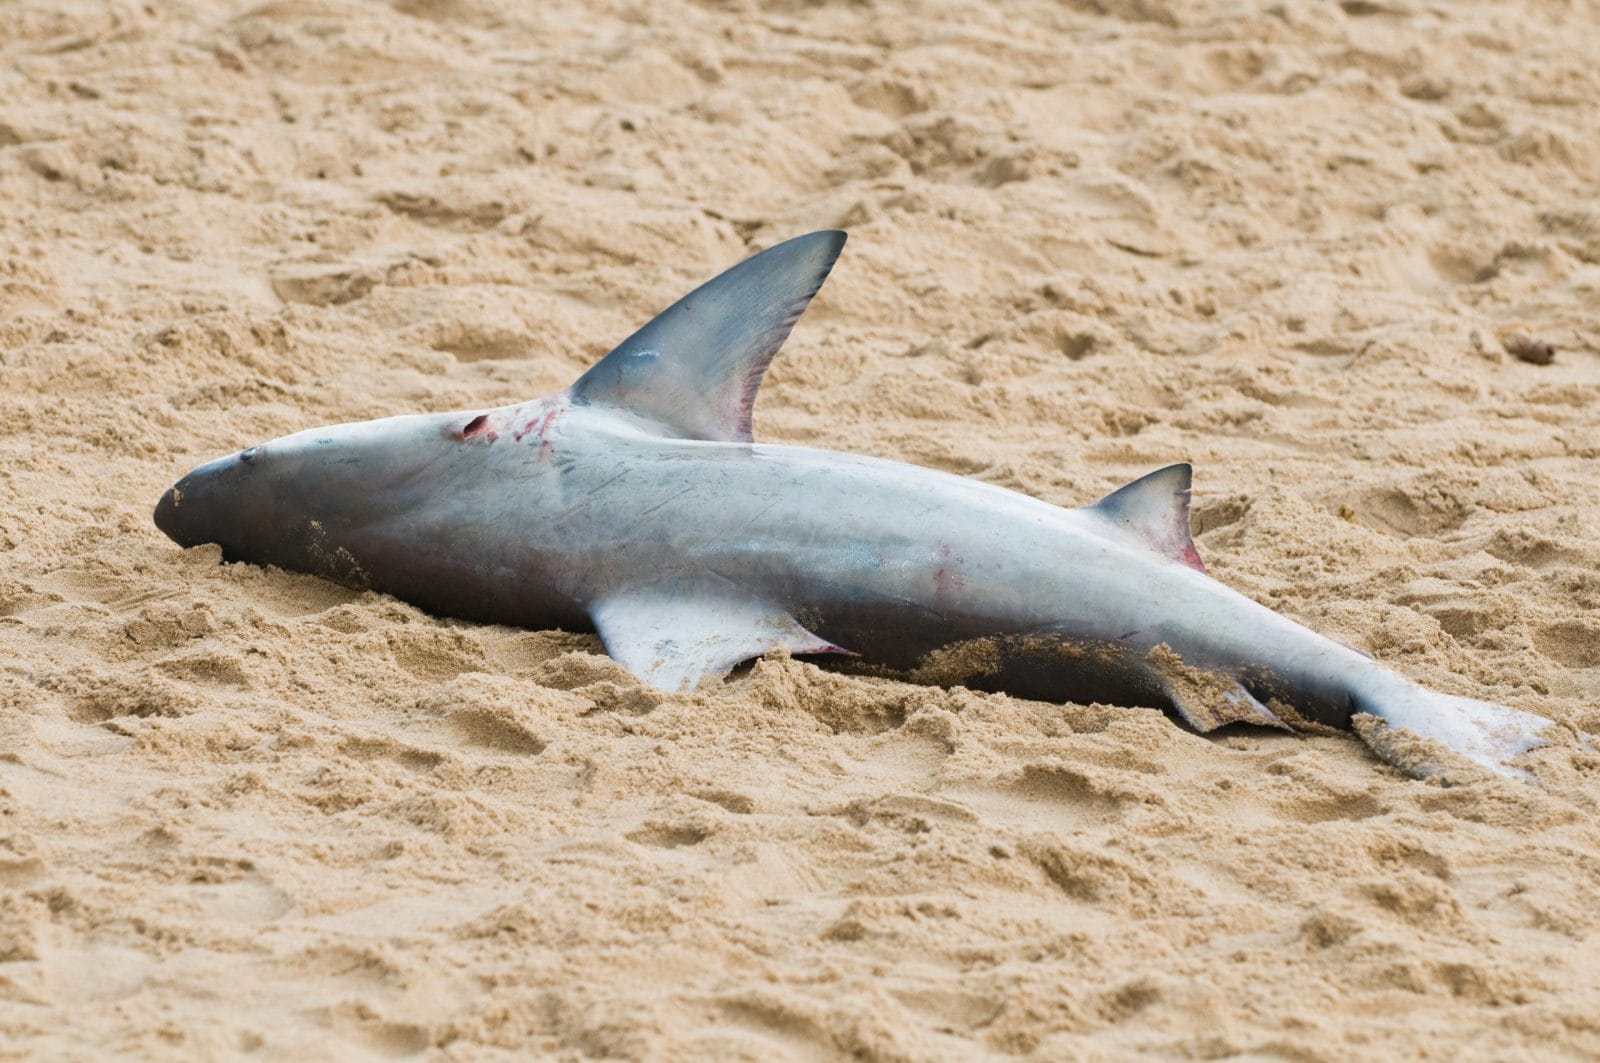 Shark lying dead on the sand